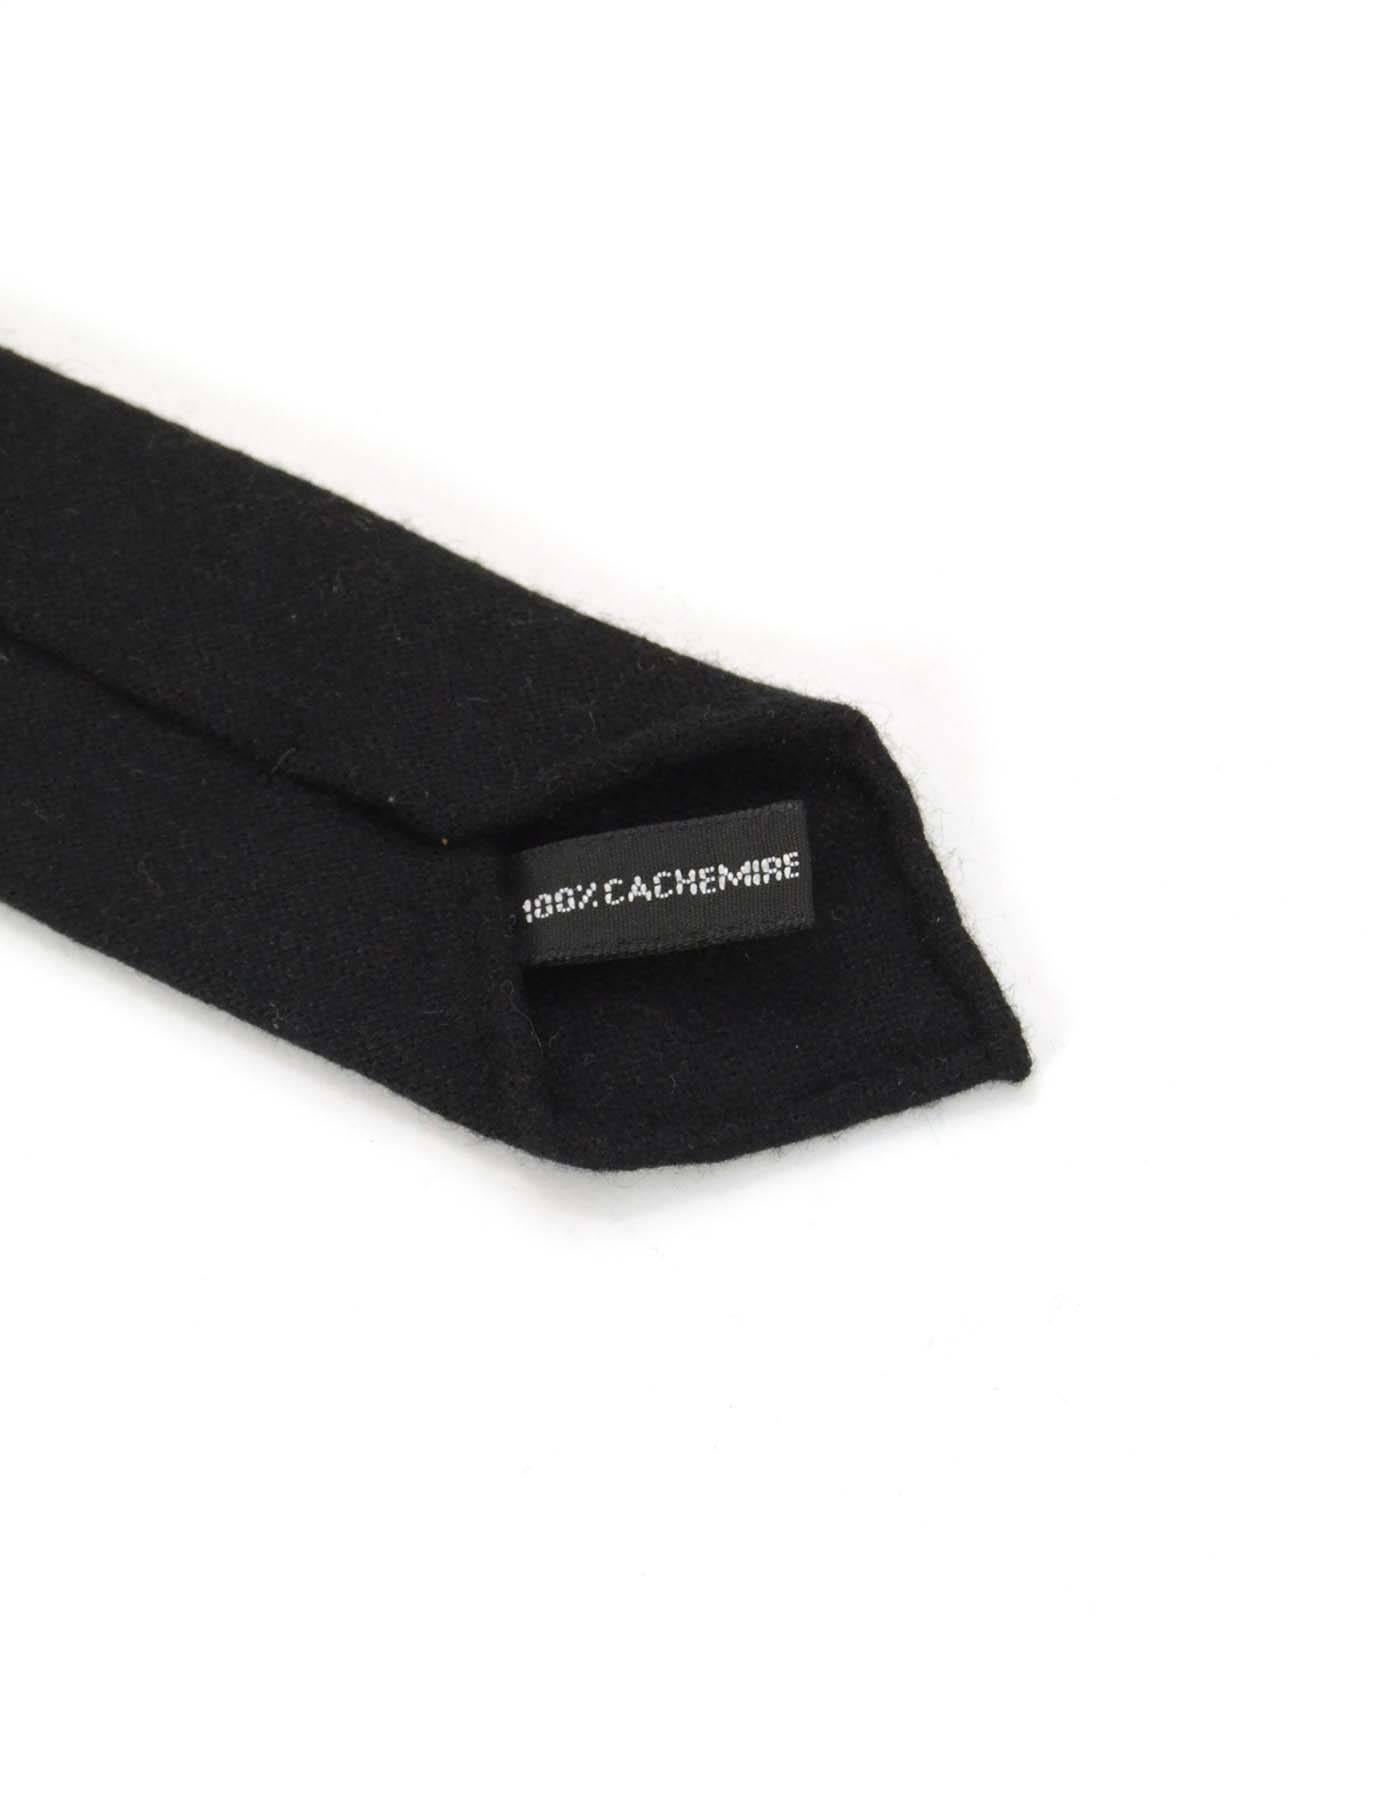 cashmere necktie